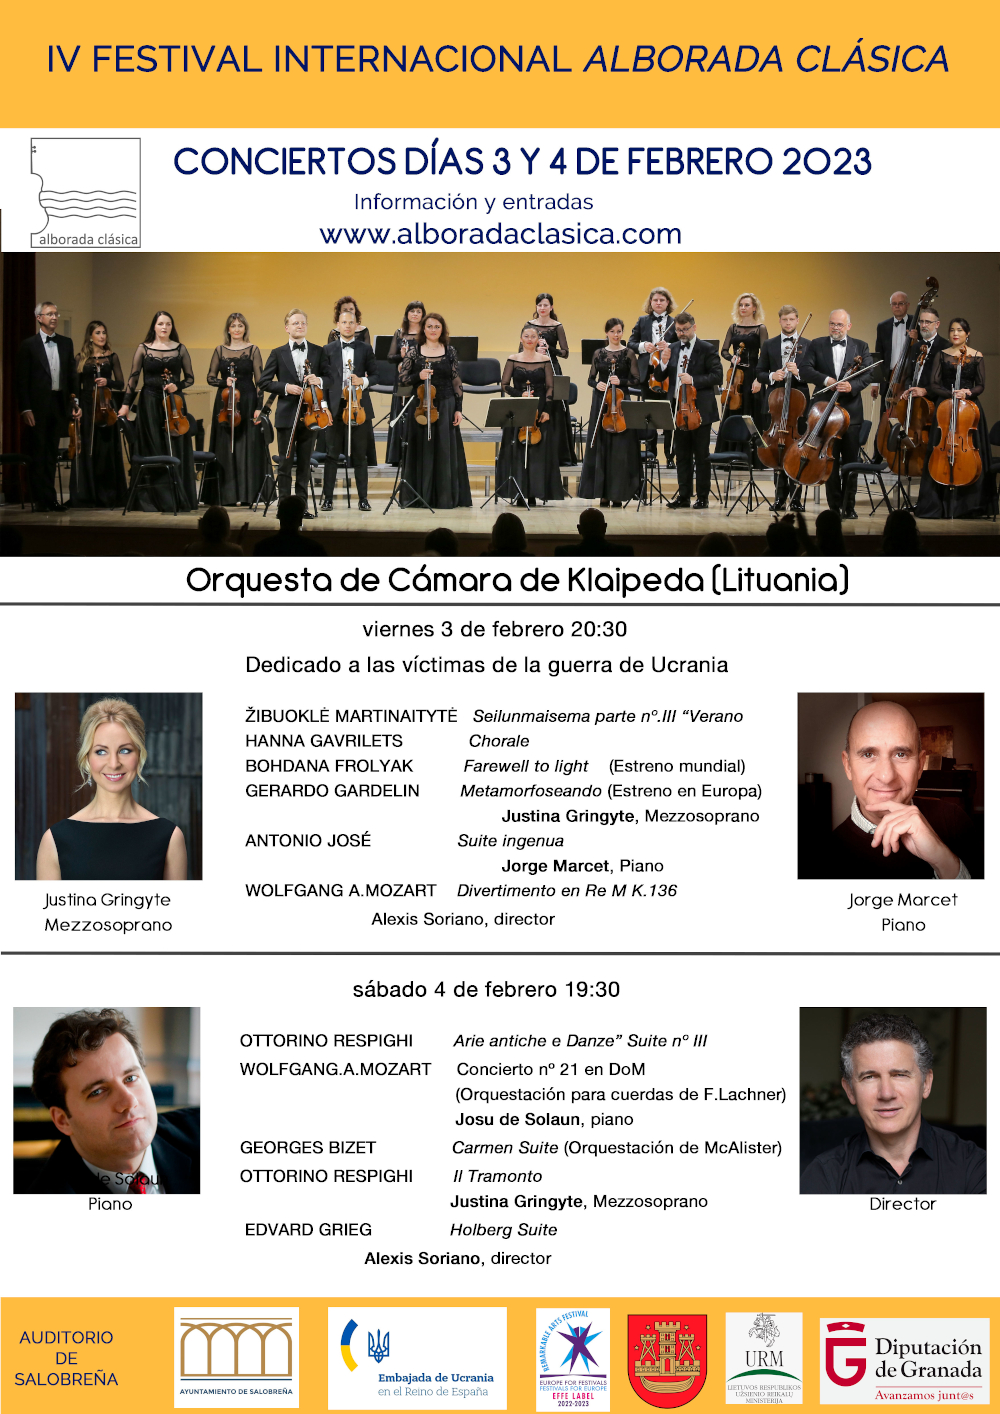 La IV edición del Festival de música ‘Alborada Clásica’ se celebrará en Salobreña del 3 al 11 de febrero